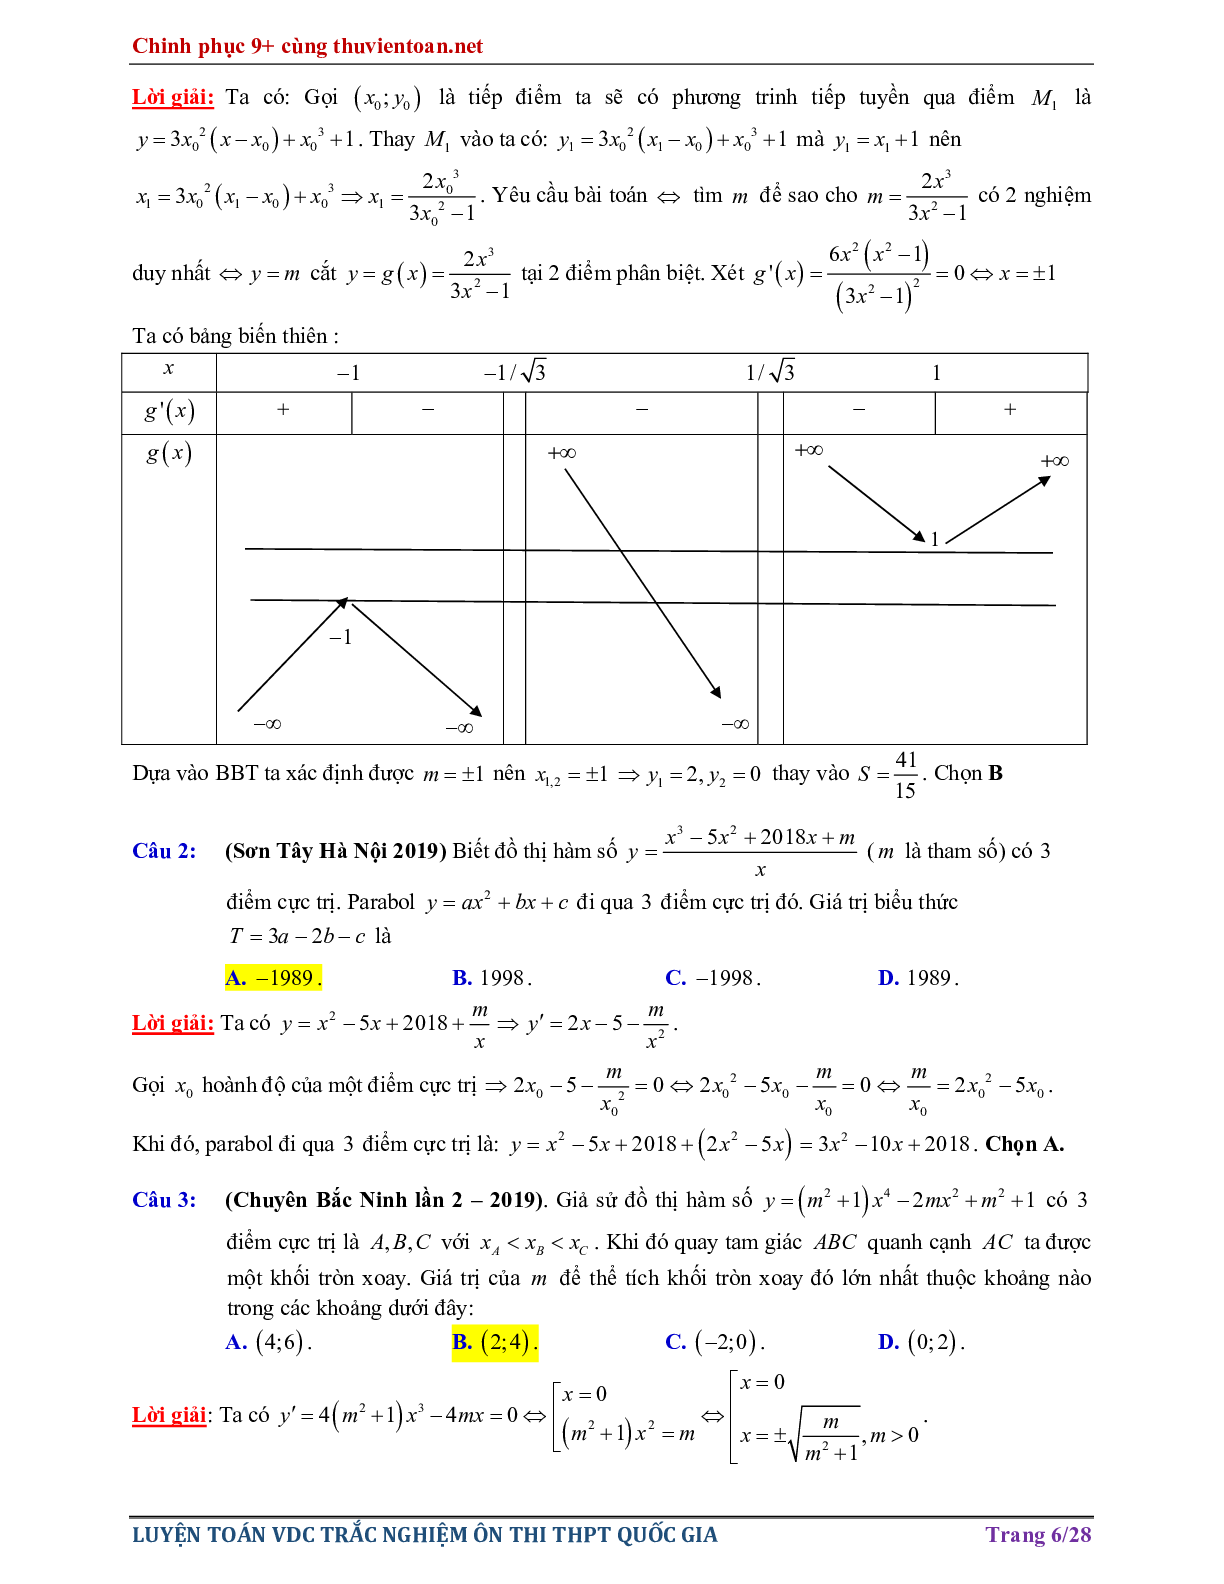 Bài tập Vận dụng cao - Nghiệm của phương trình hàm hợp ôn thi THPTQG năm 2021 (trang 6)